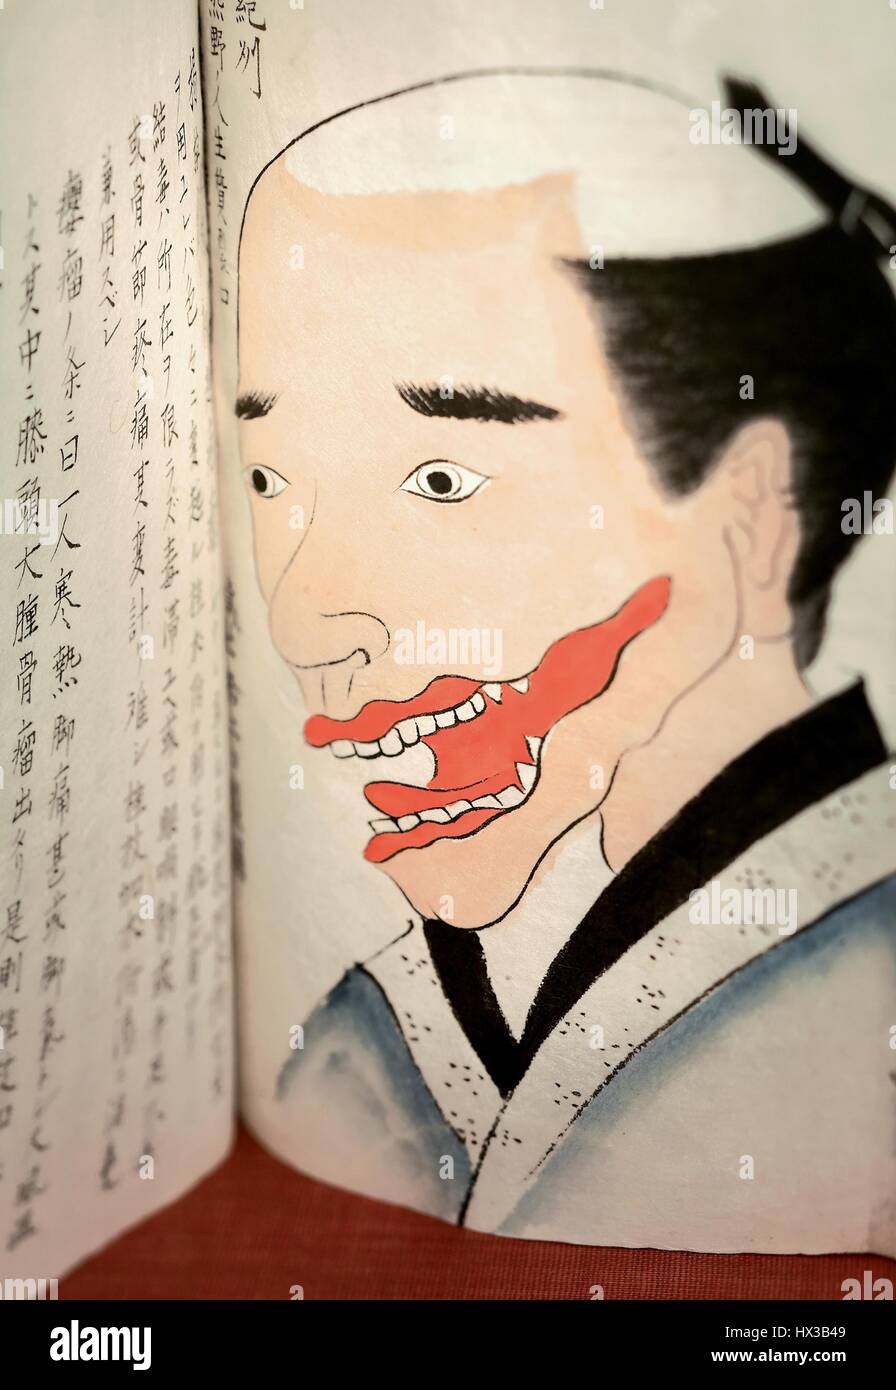 Illustrierte Manuskript Öffnen einer Zeichnung eines Mannes Gesicht mit einem roten Tumor durch den Mund, um mit Vollnarkose, in "Bunsen Kiroku" herausgeschnitten werden durch Seishu Hanaoka (1760-1835), 1800. Mit freundlicher Genehmigung National Library of Medicine. Stockfoto